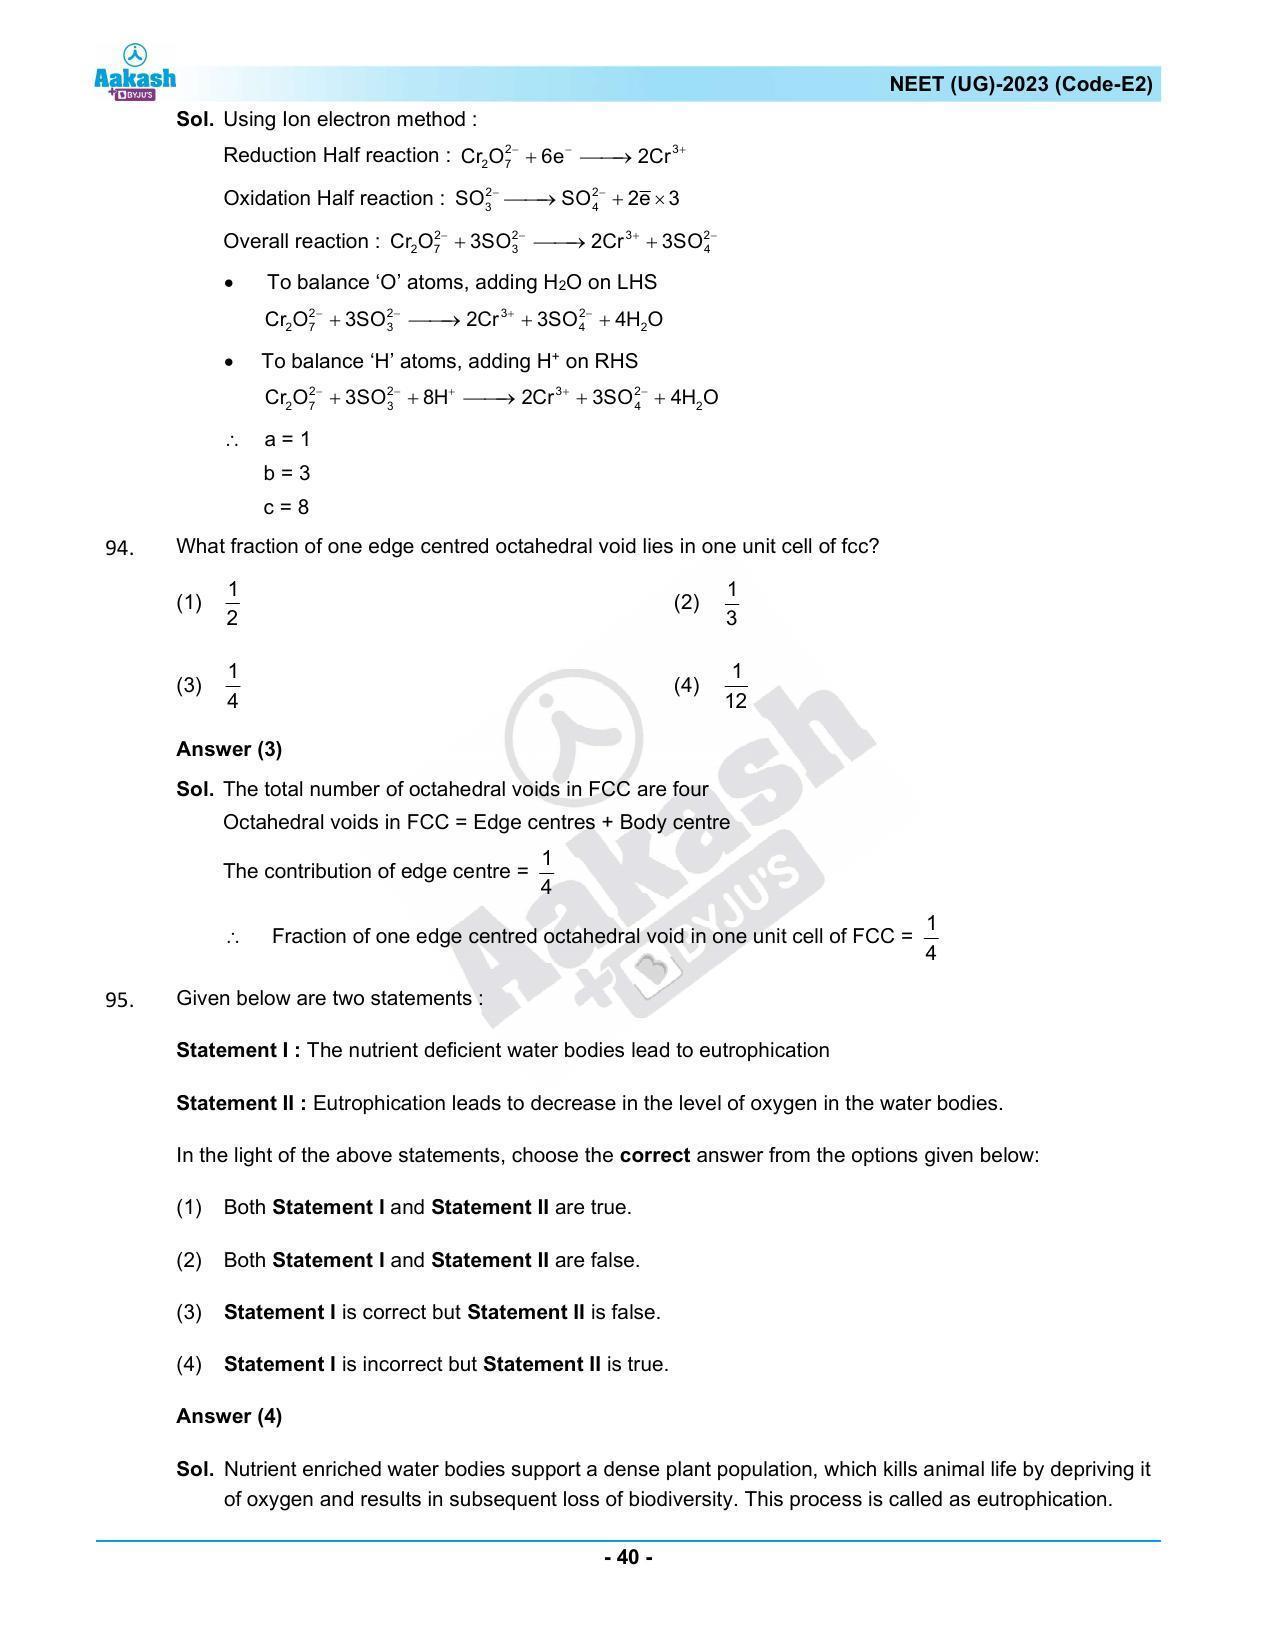 NEET 2023 Question Paper E2 - Page 40